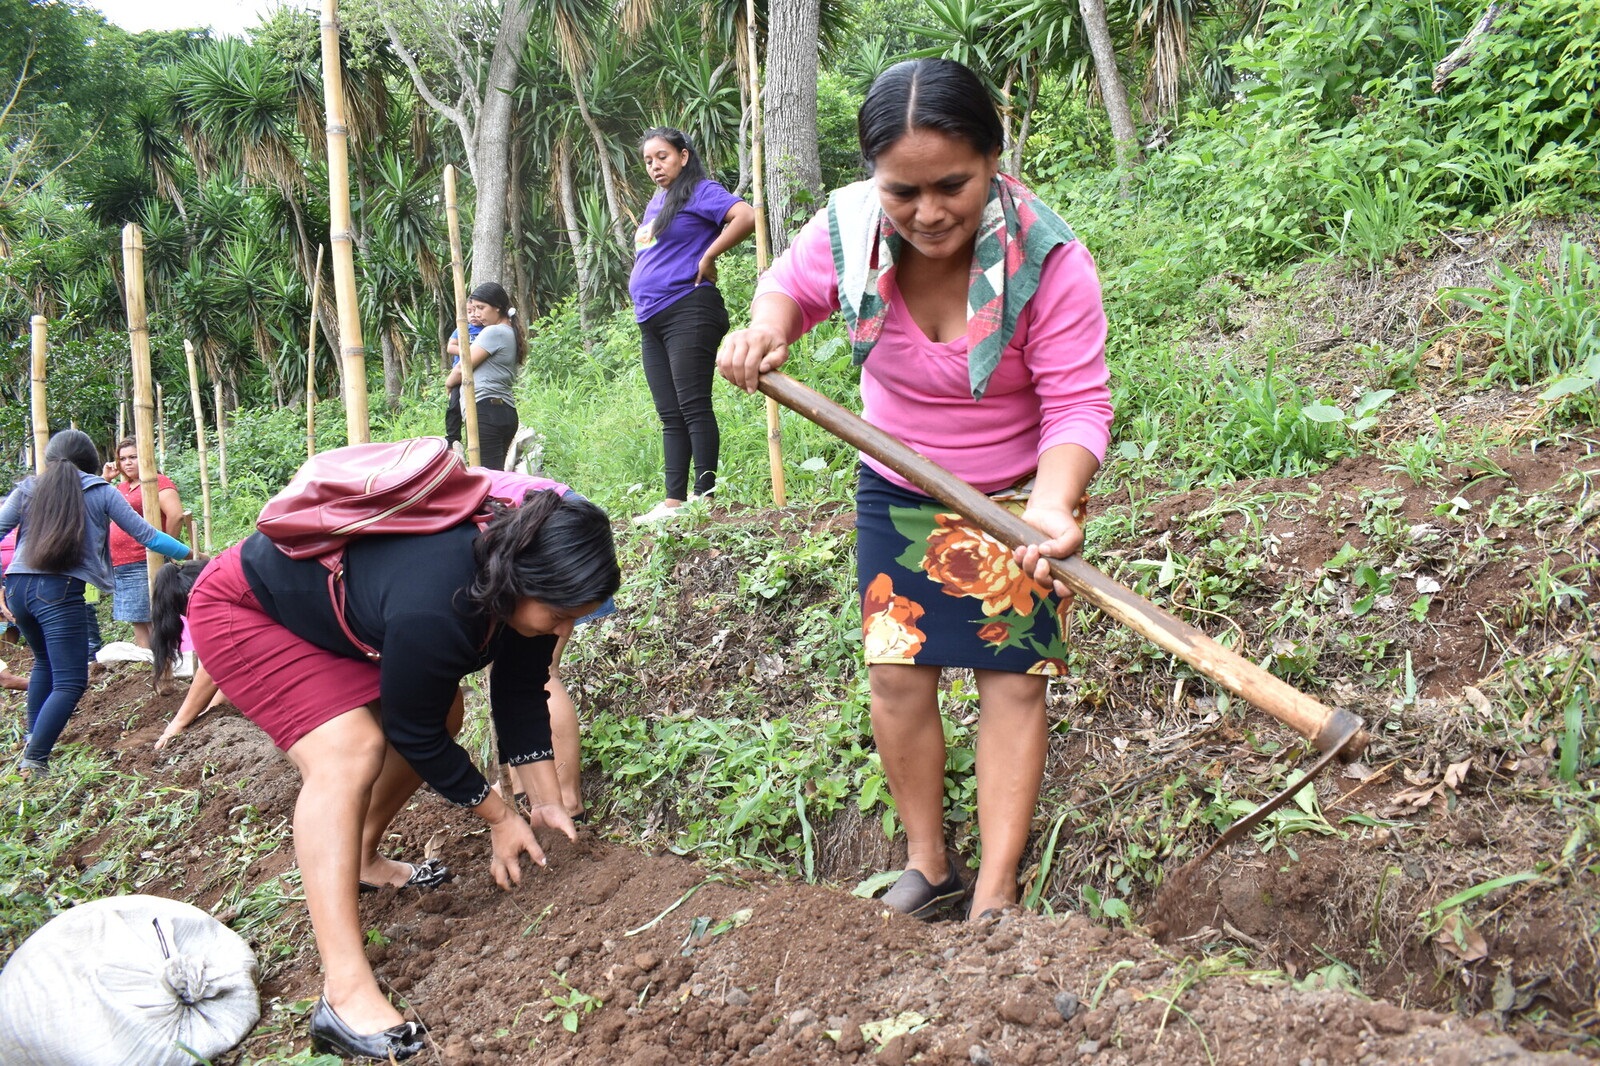 Growing food sovereignty in El Salvador